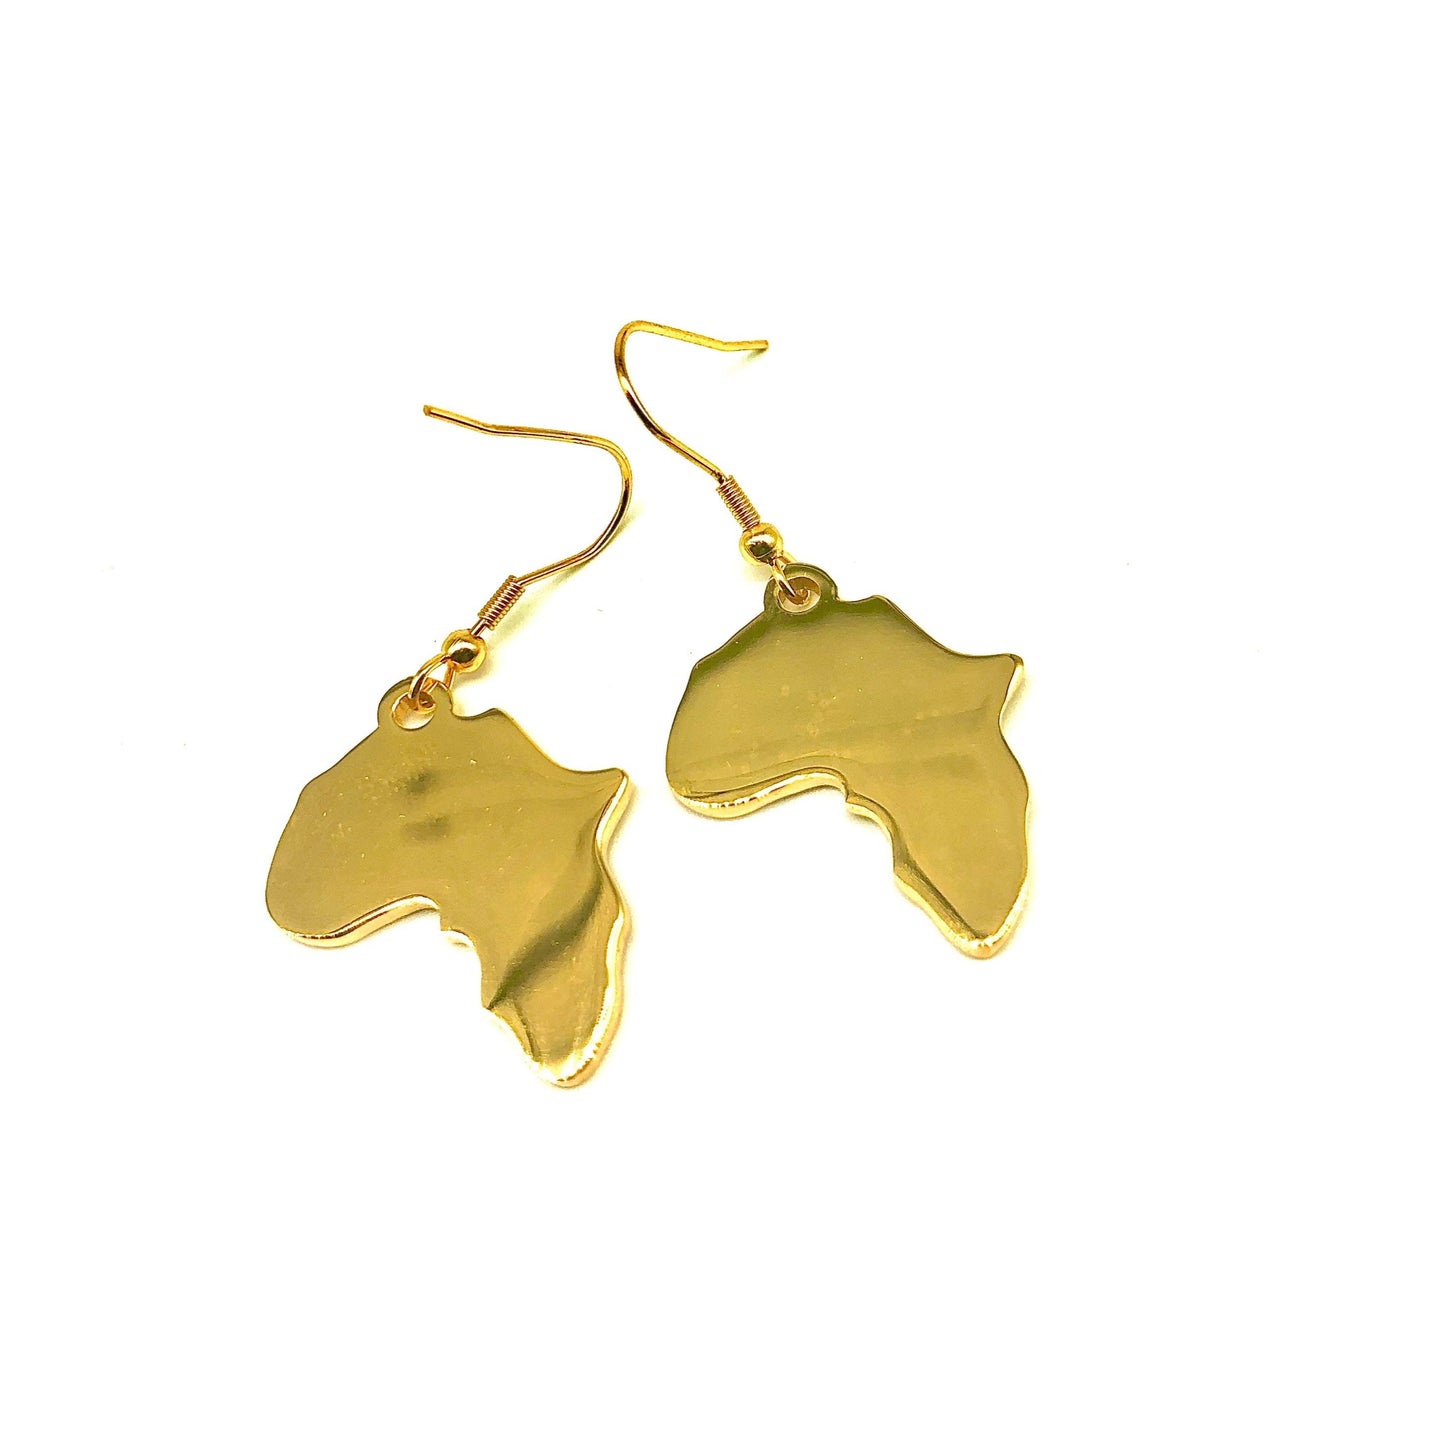 New 18k Gold "One Africa" Earrings